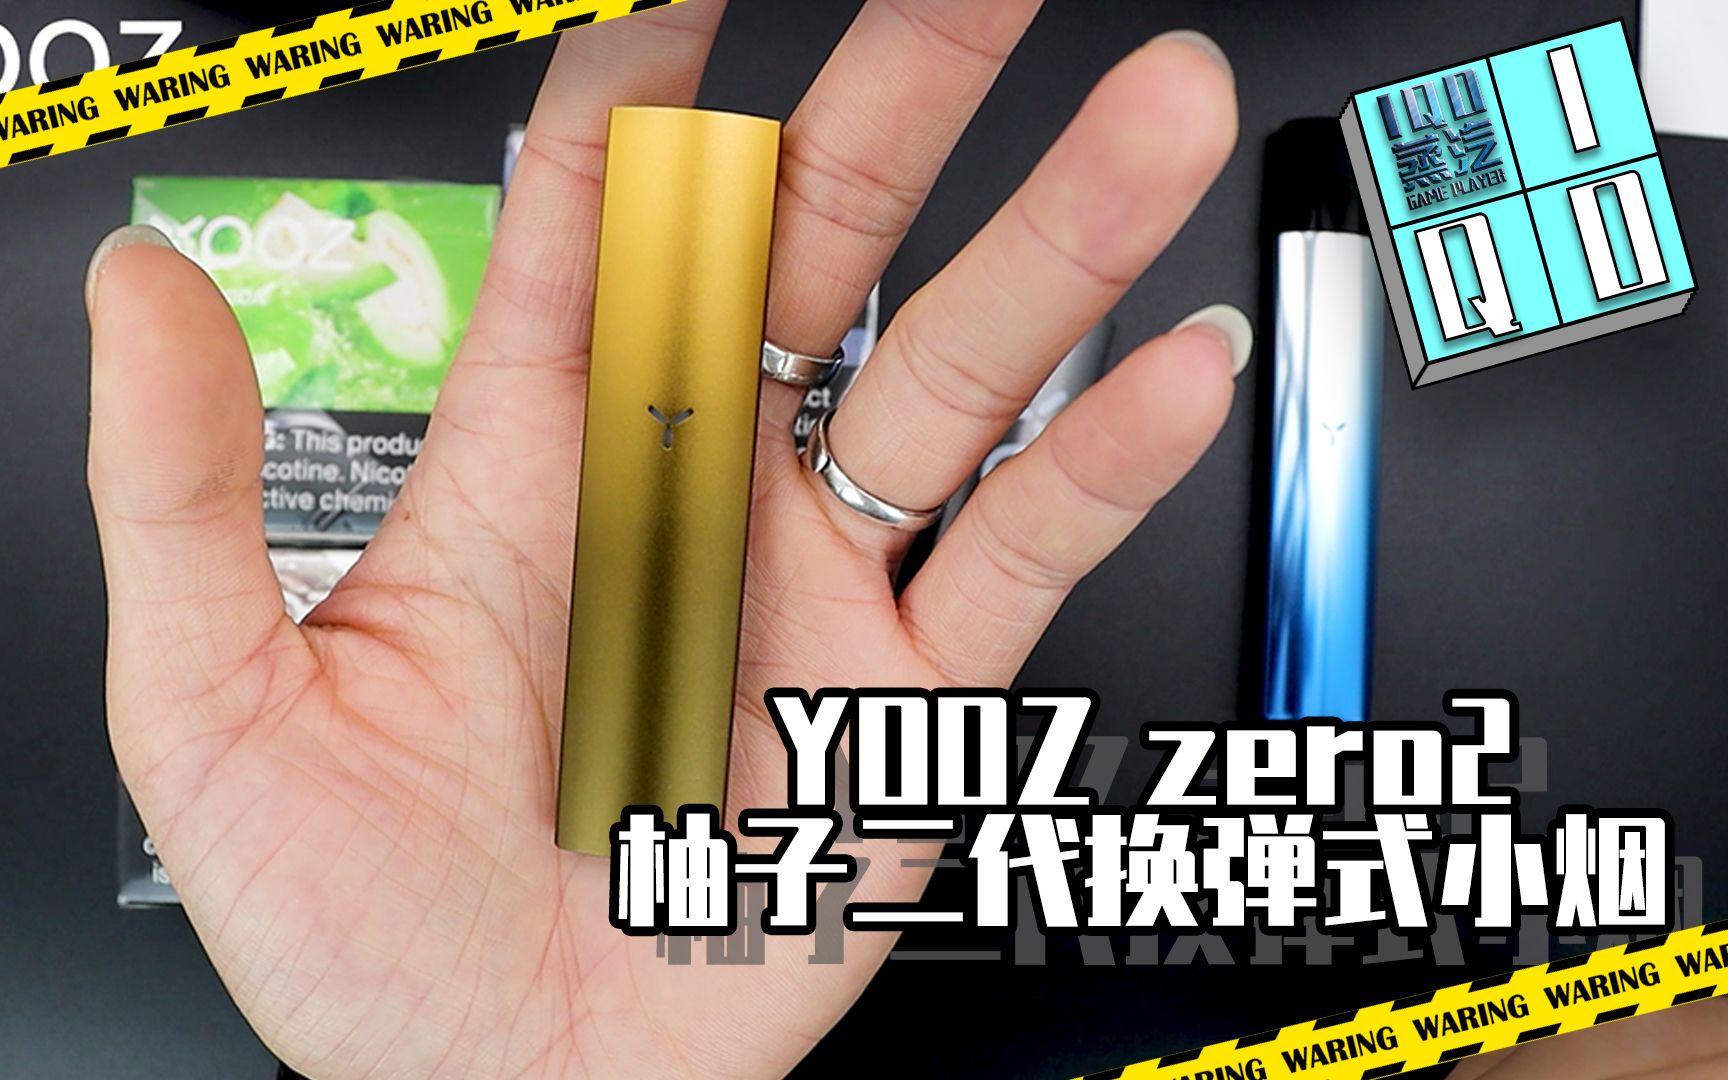 yoozzero2柚子二代换弹式小烟ioq蒸汽玩家开箱评测电子烟